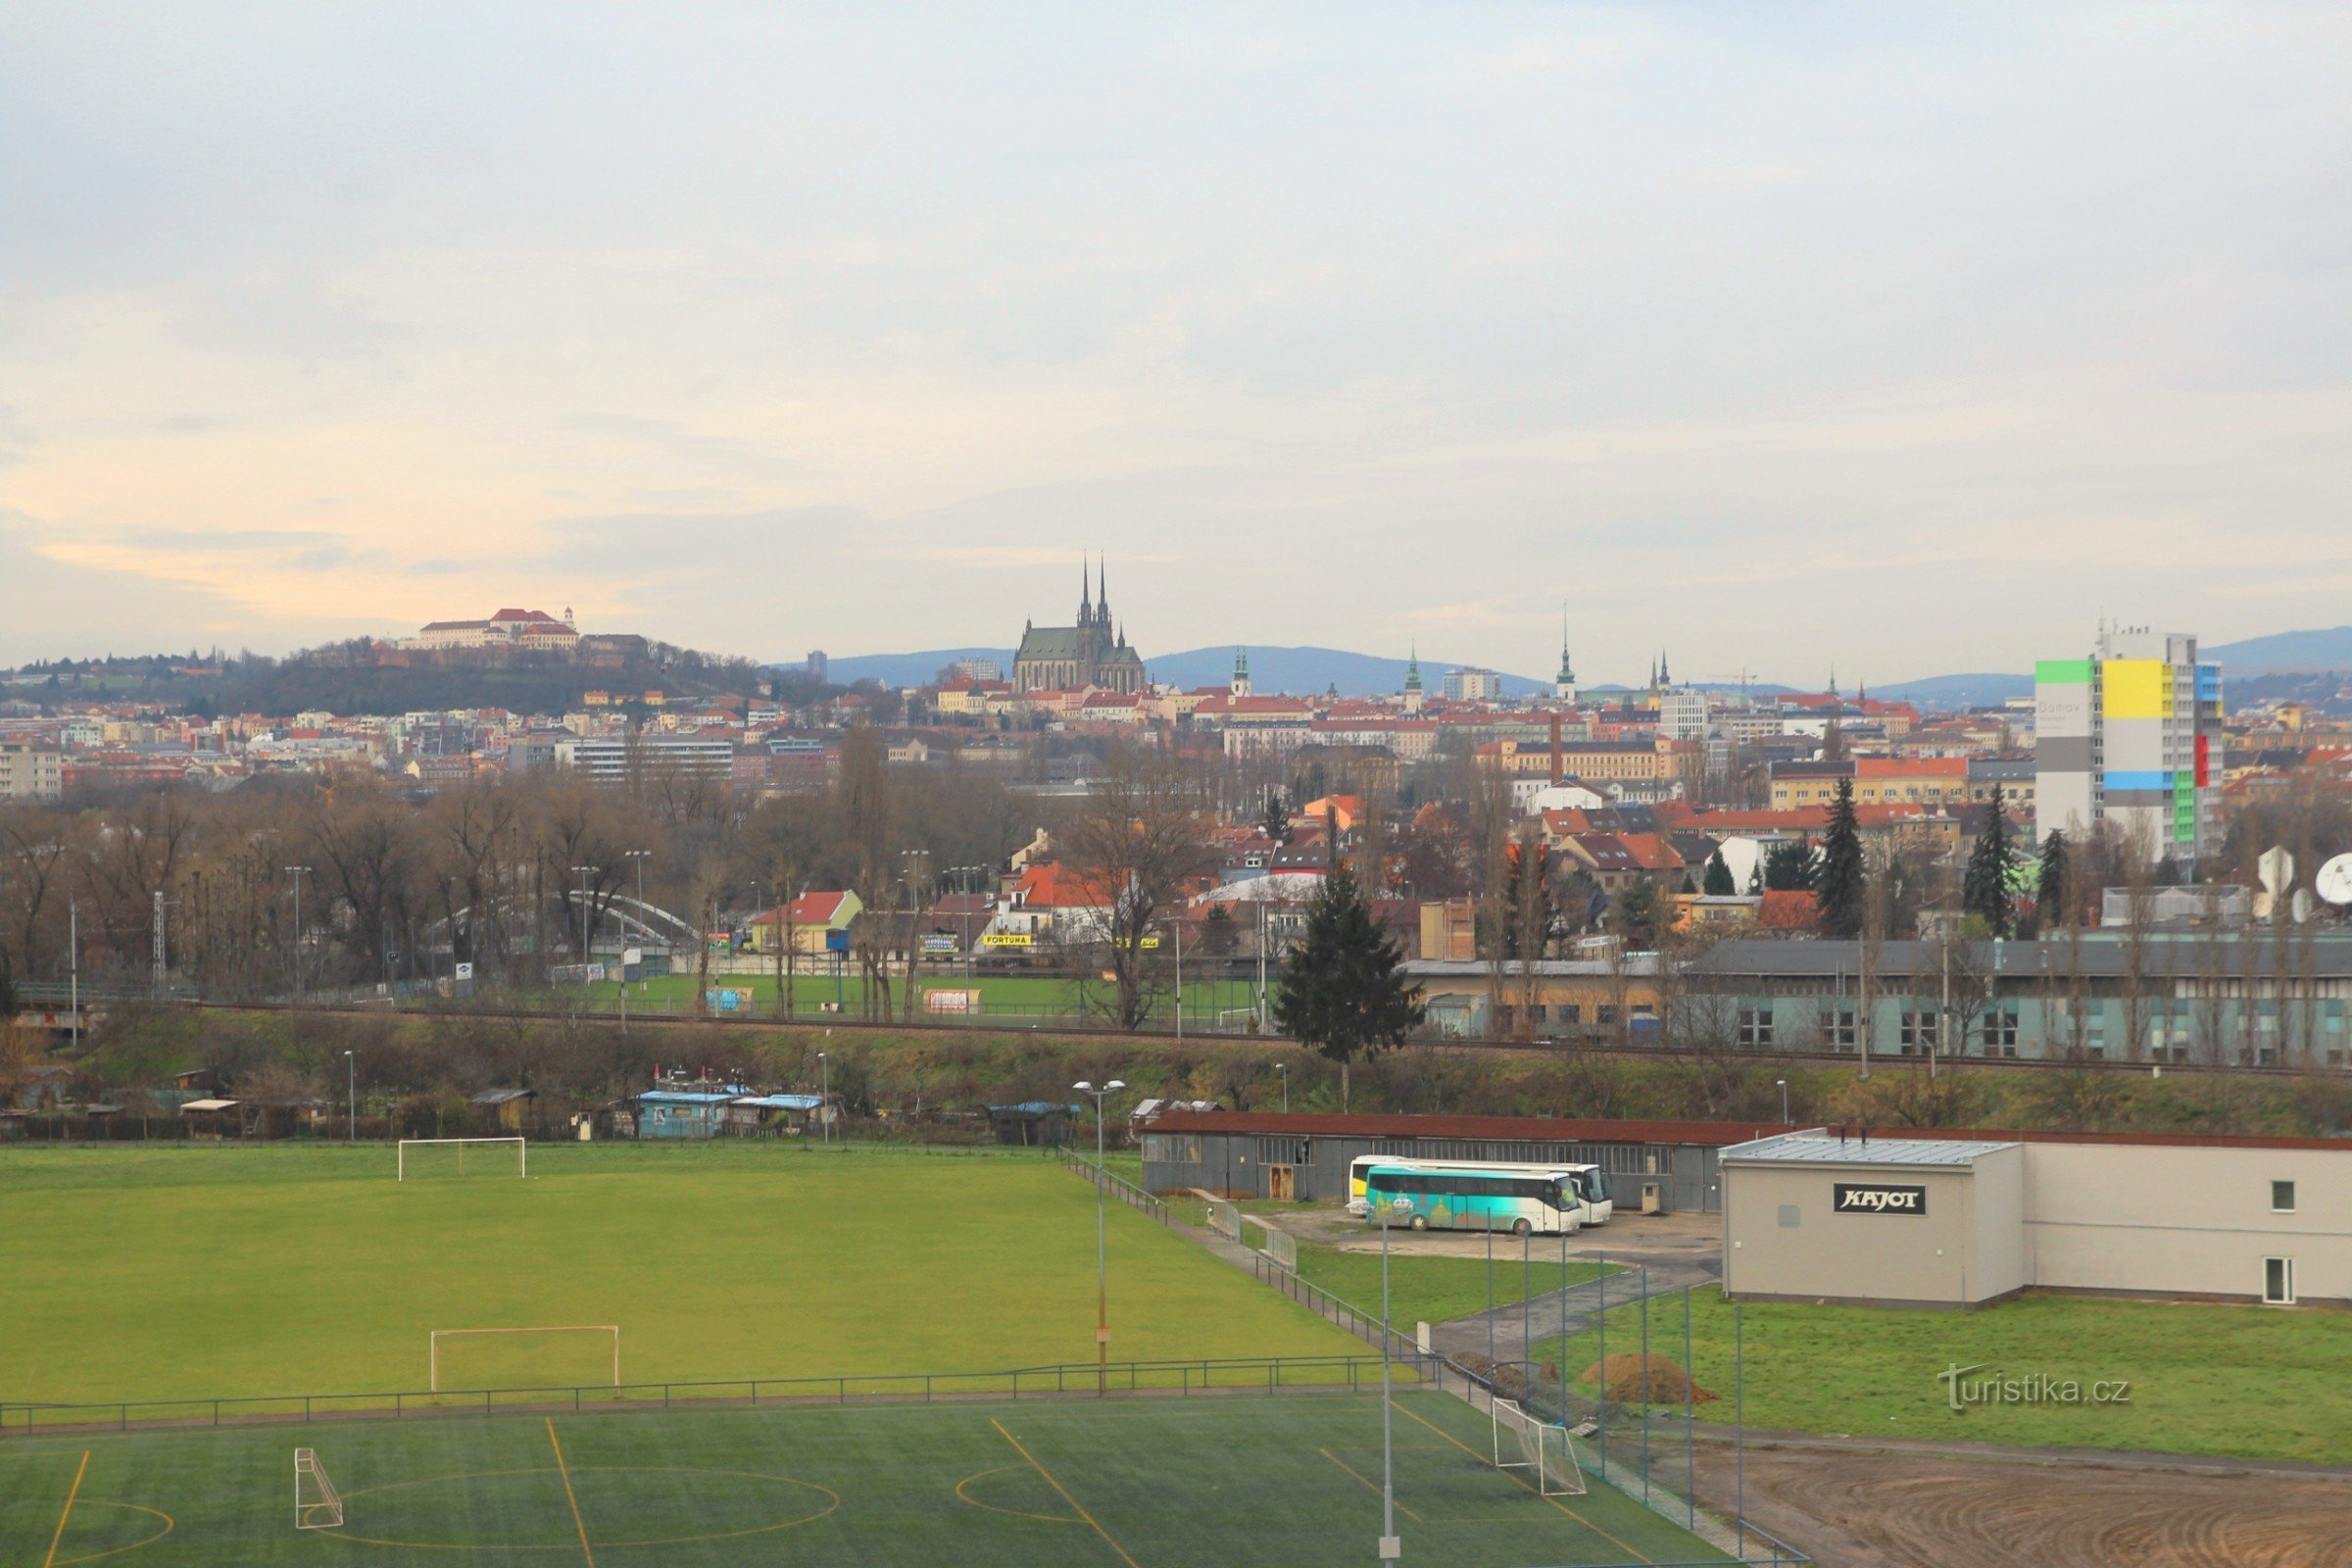 O vedere a părții istorice din Brno cu reperele Petrov și Špilberk